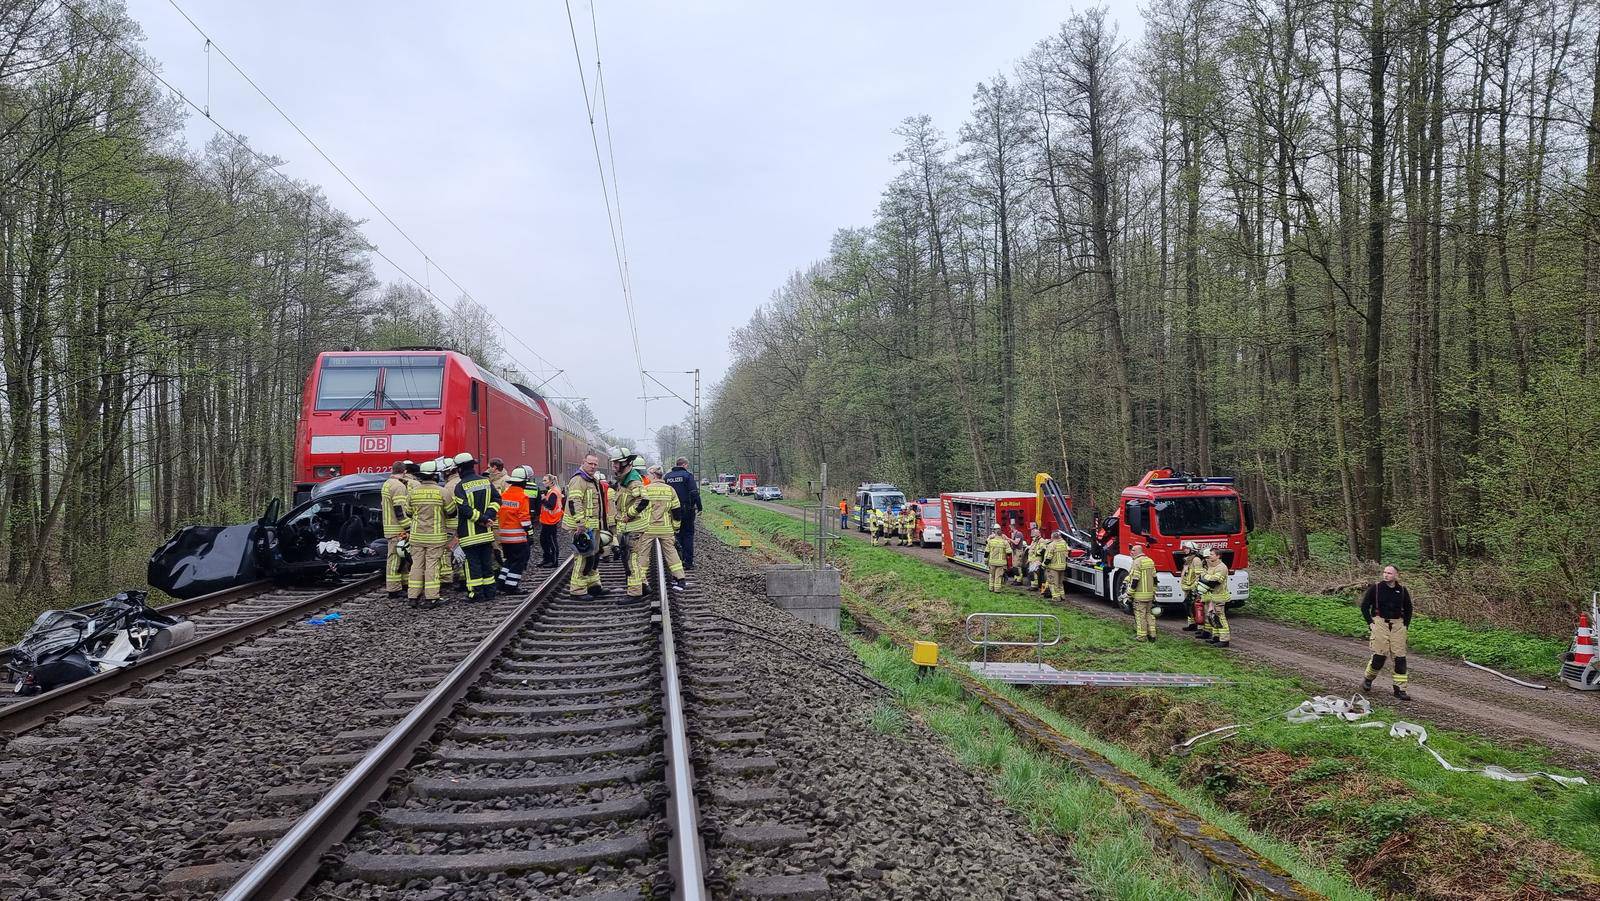 Train hits car - three dead